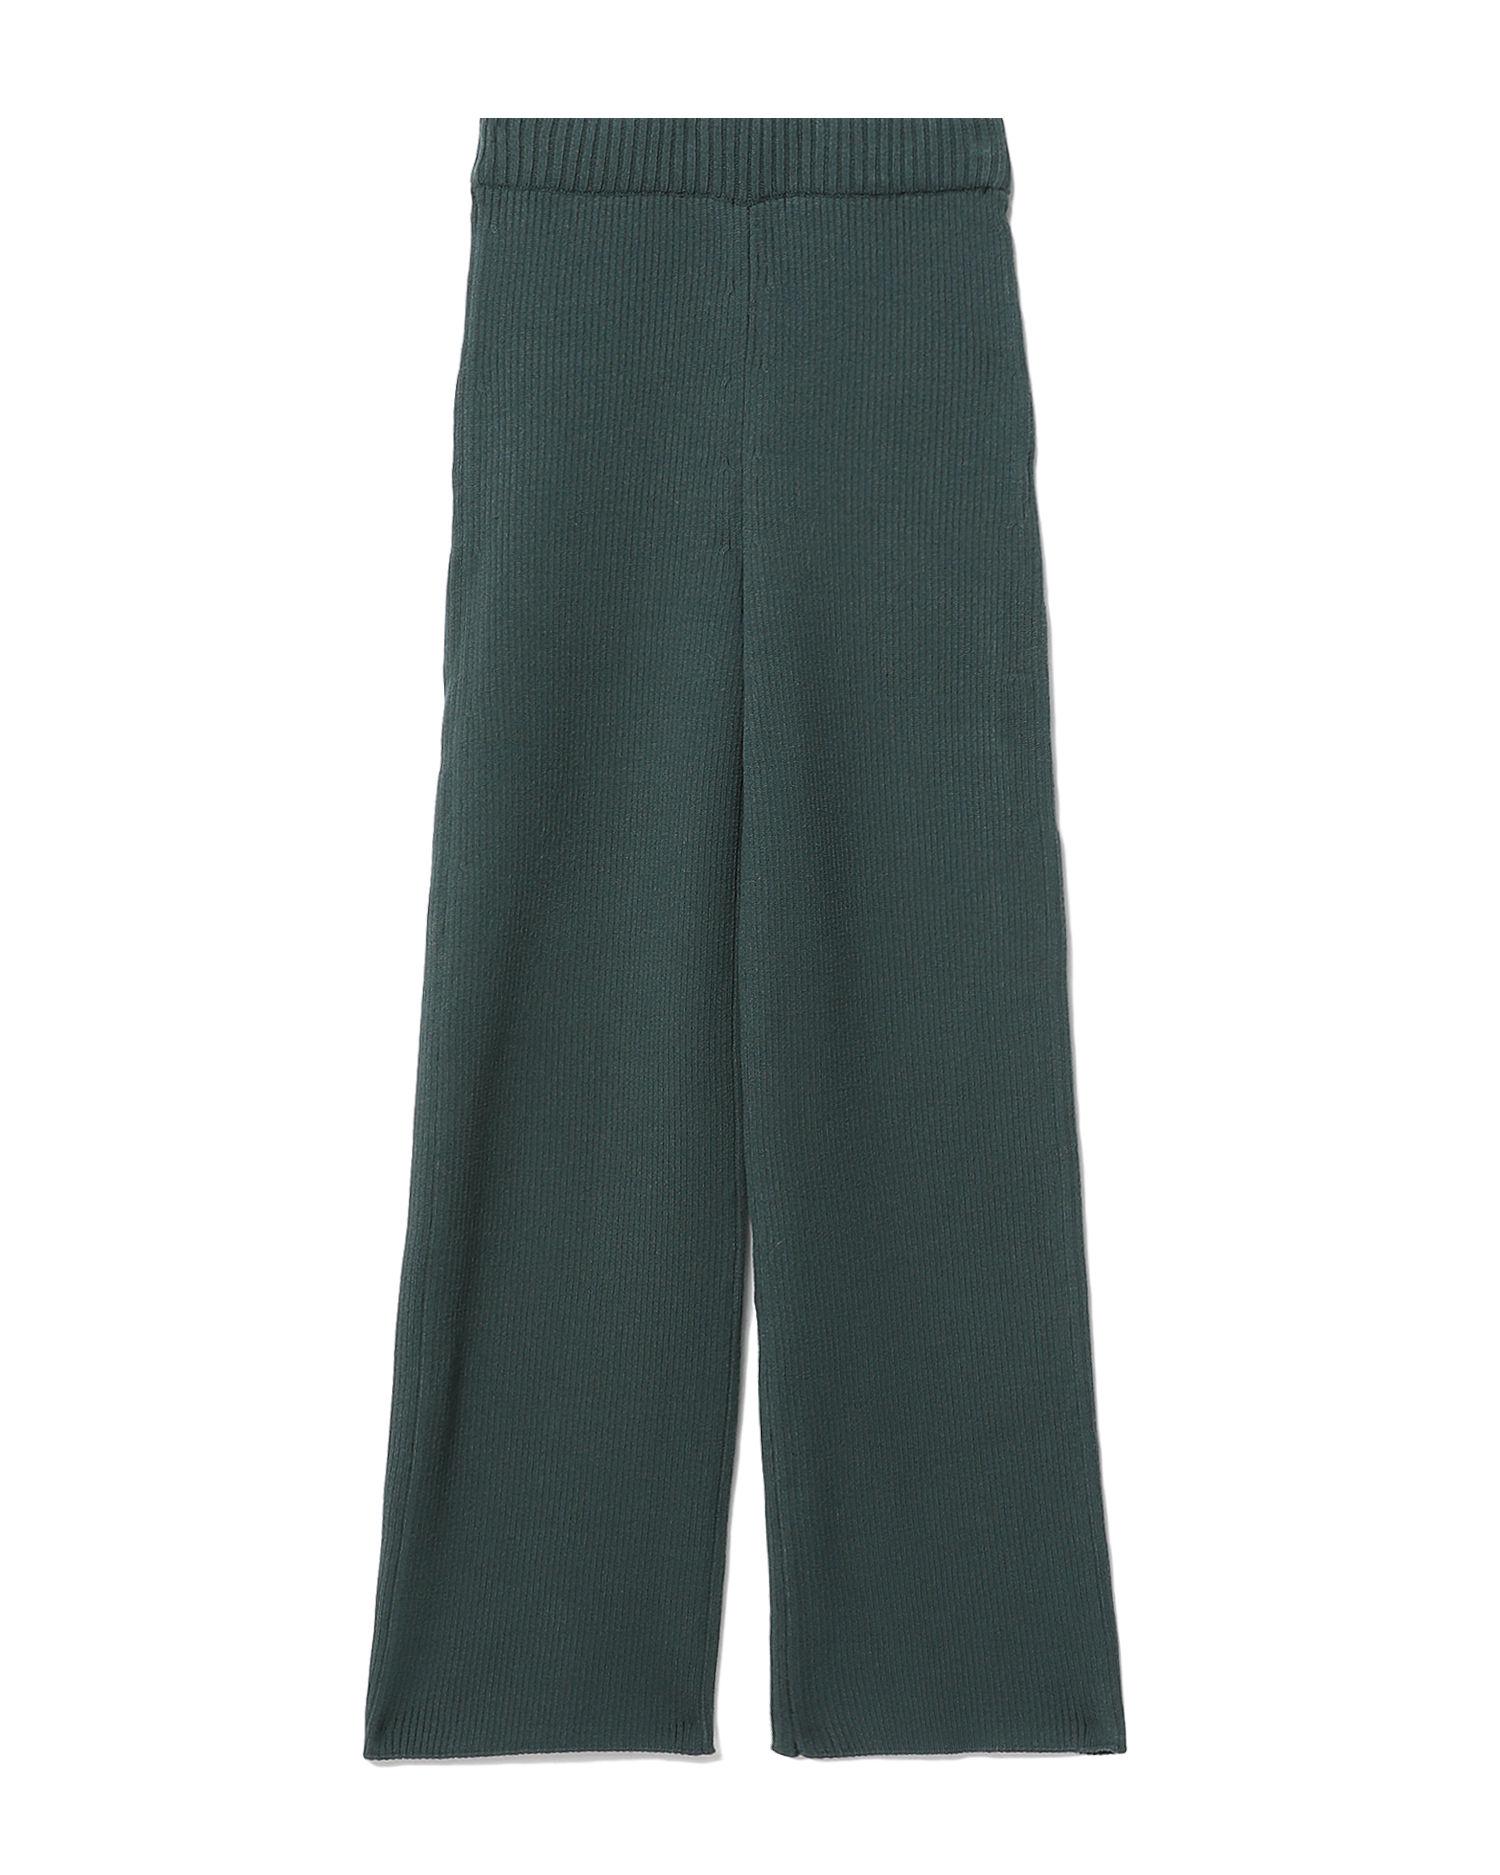 Lia rib-knit culotte pants by AERON